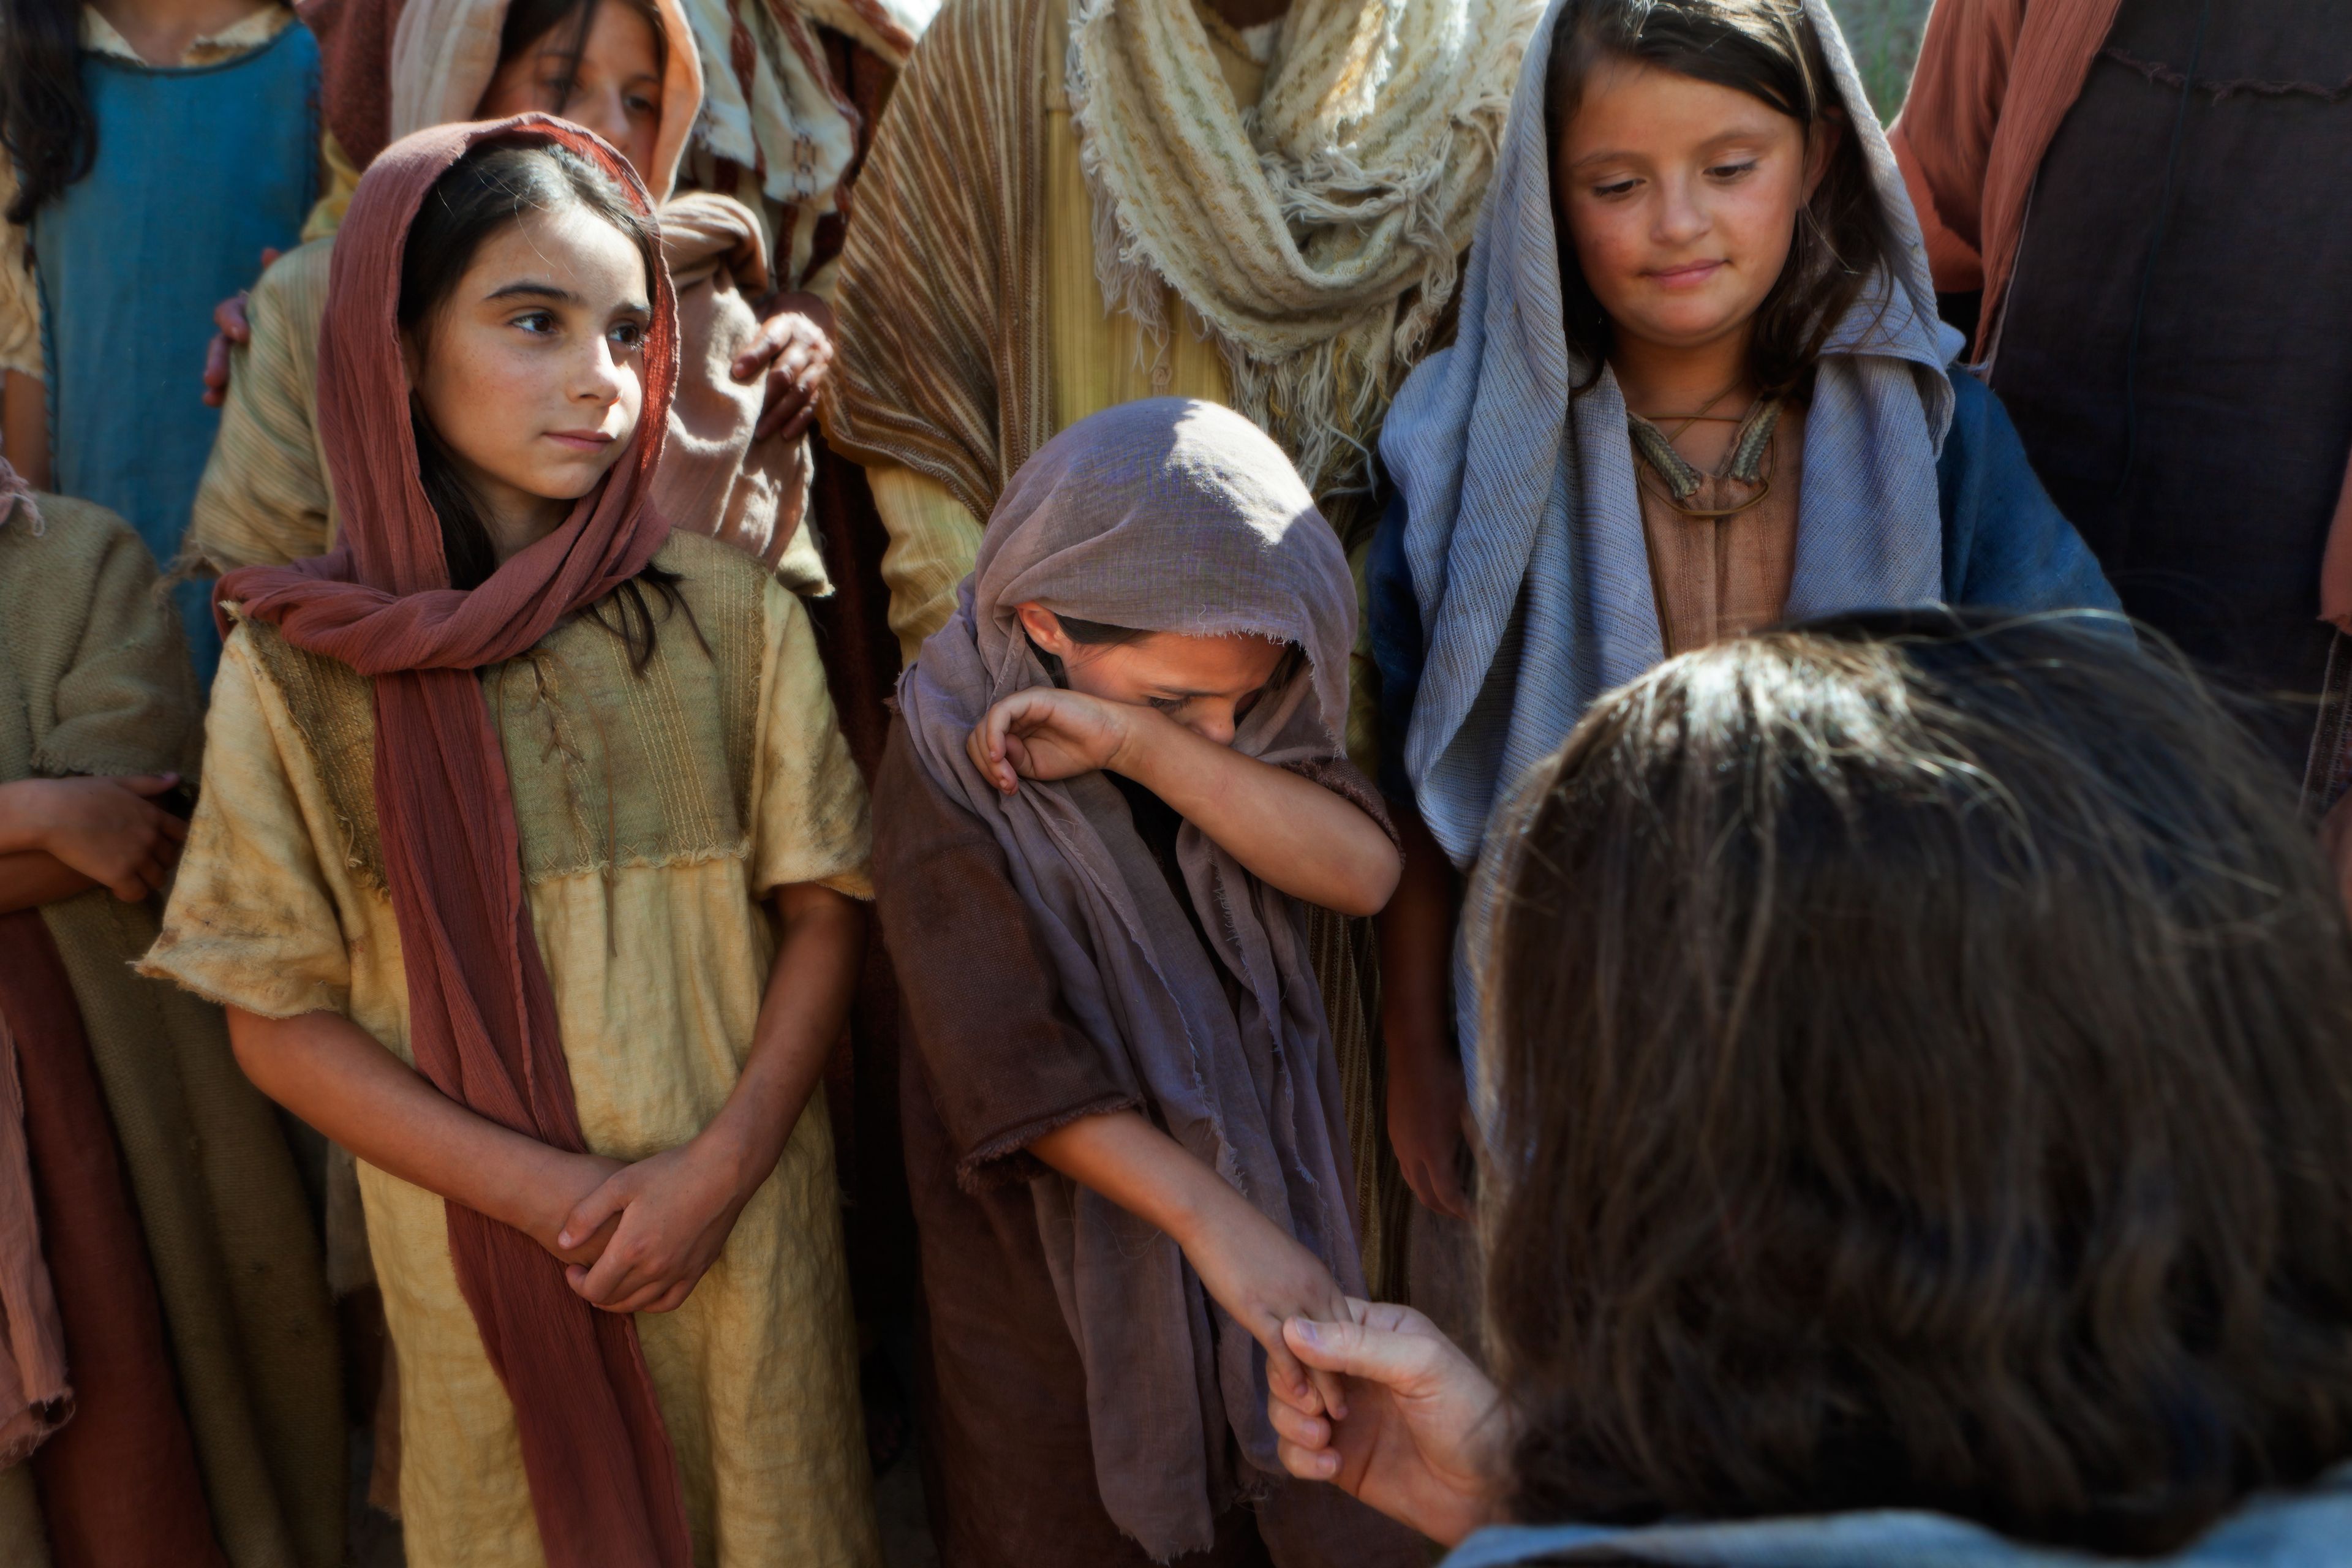 Cristo habla con un grupo de niños, uno de los cuales está llorando.